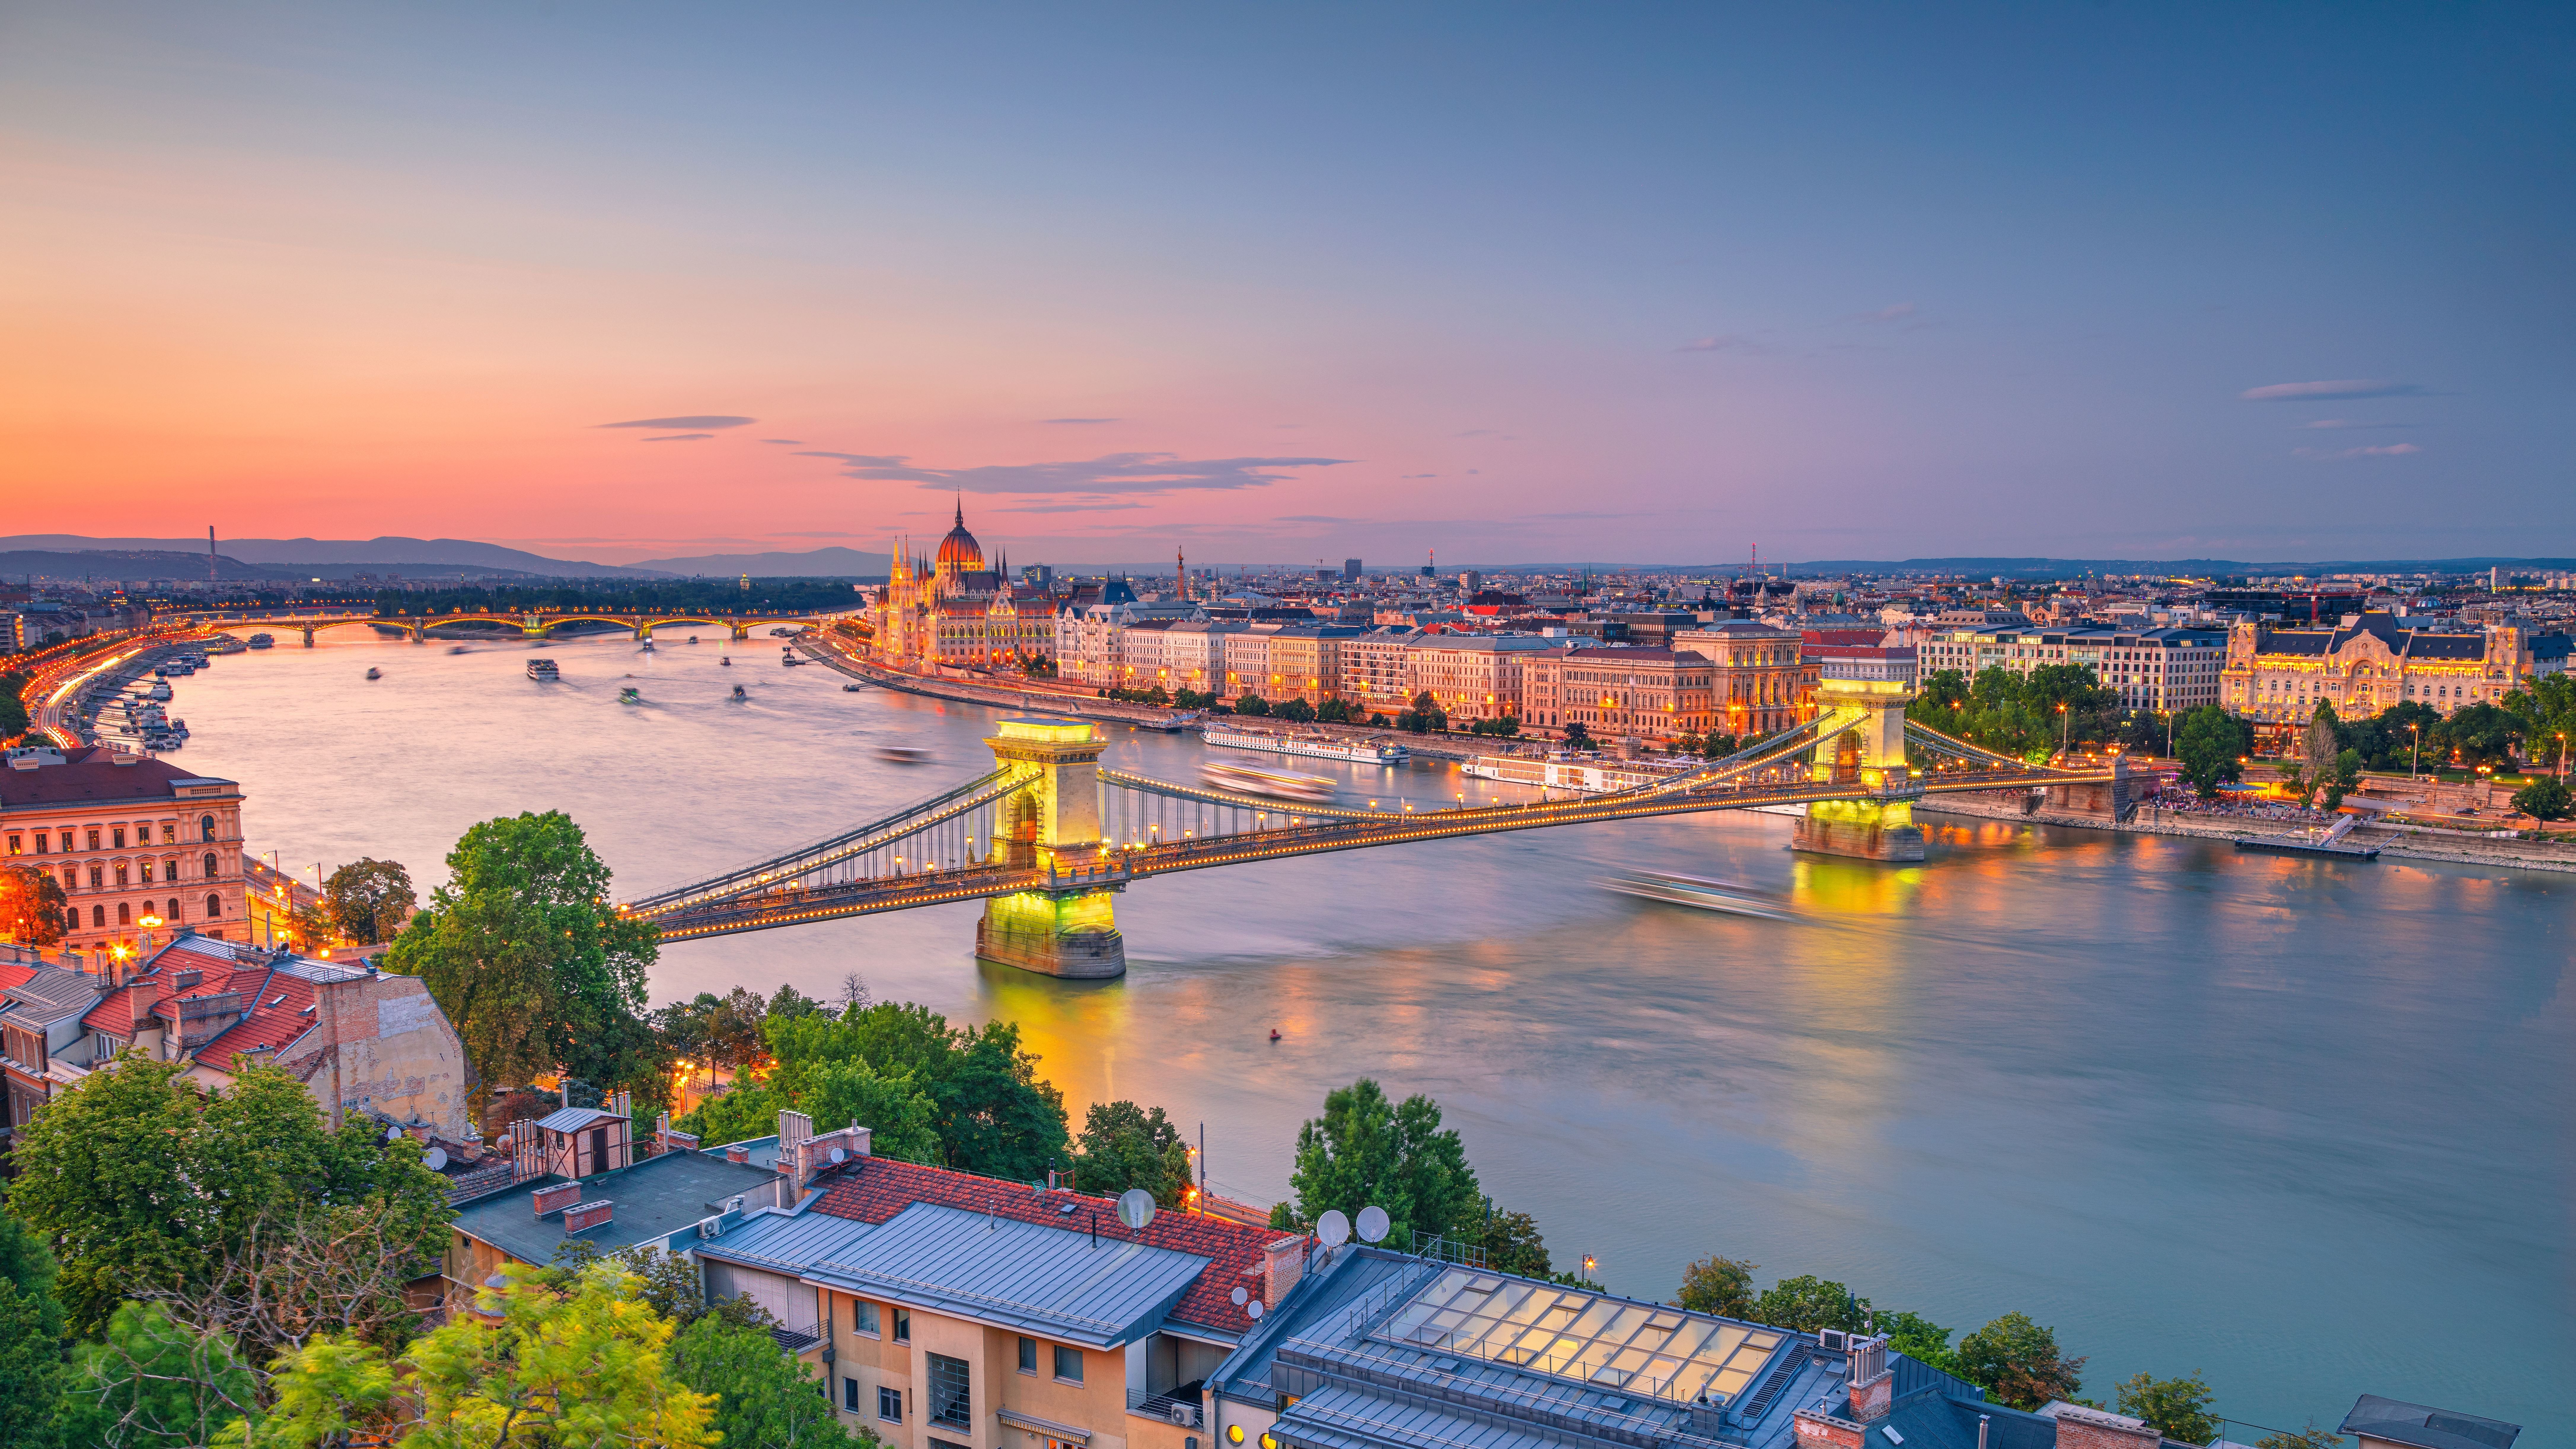 Budapest is szerepel az előkelő listán